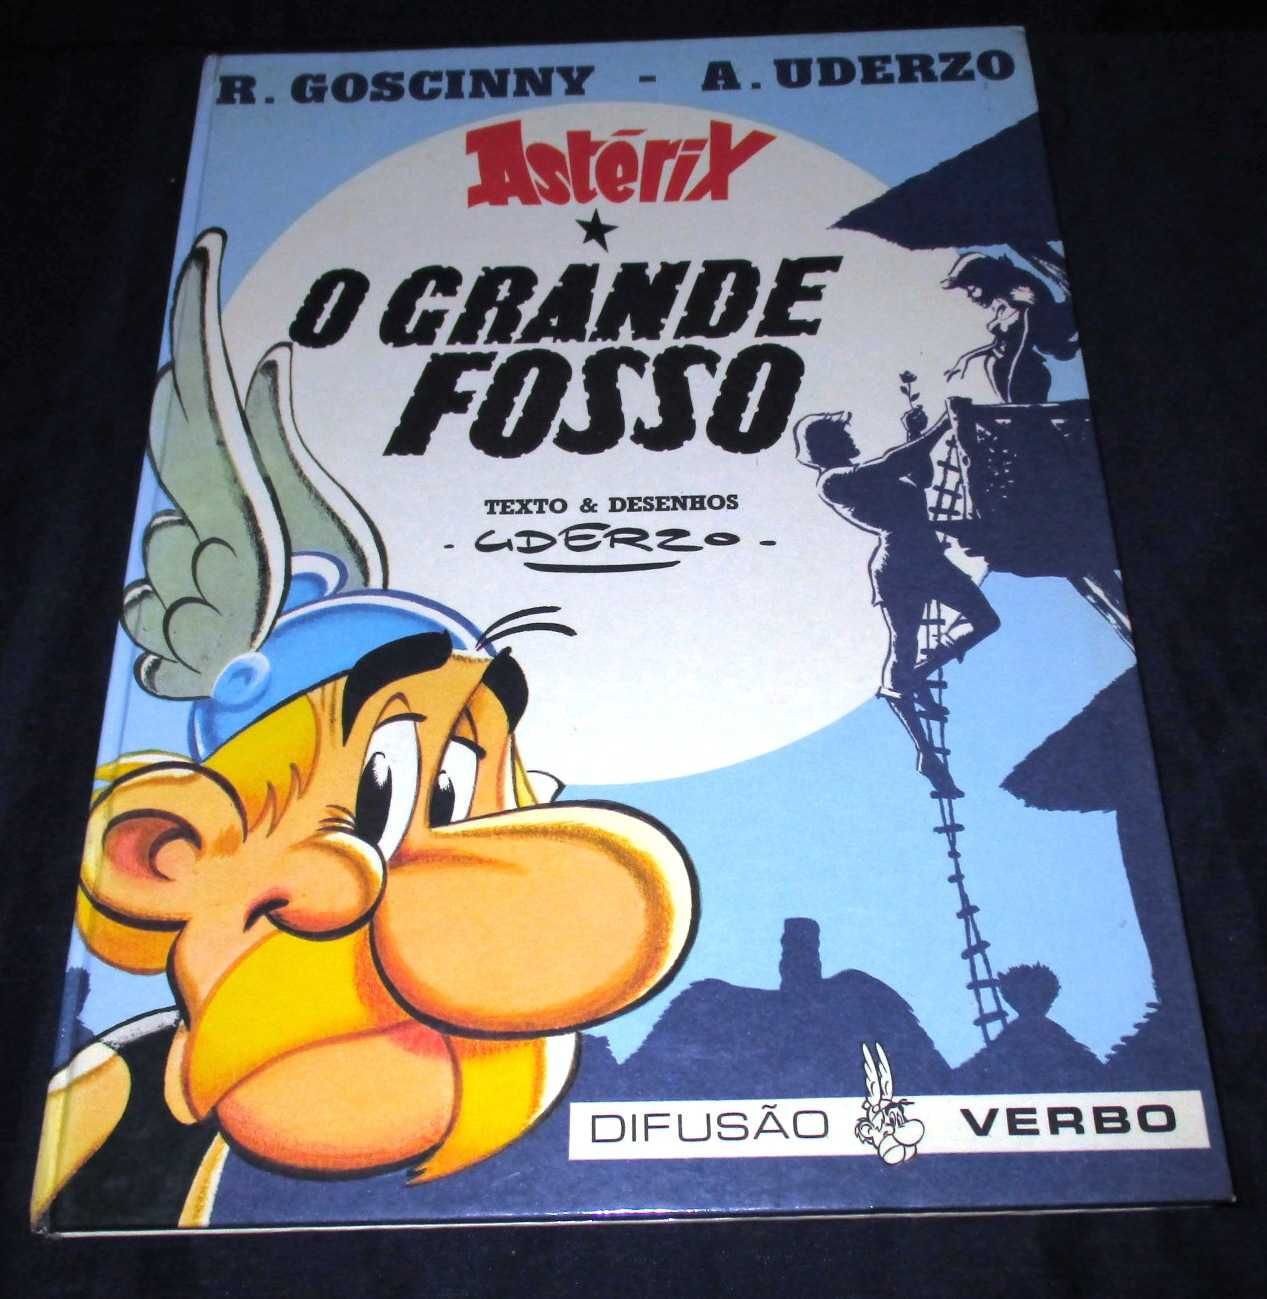 Livro Grande Fosso Astérix Difusão Verbo 1ª edição 1988 capa dura